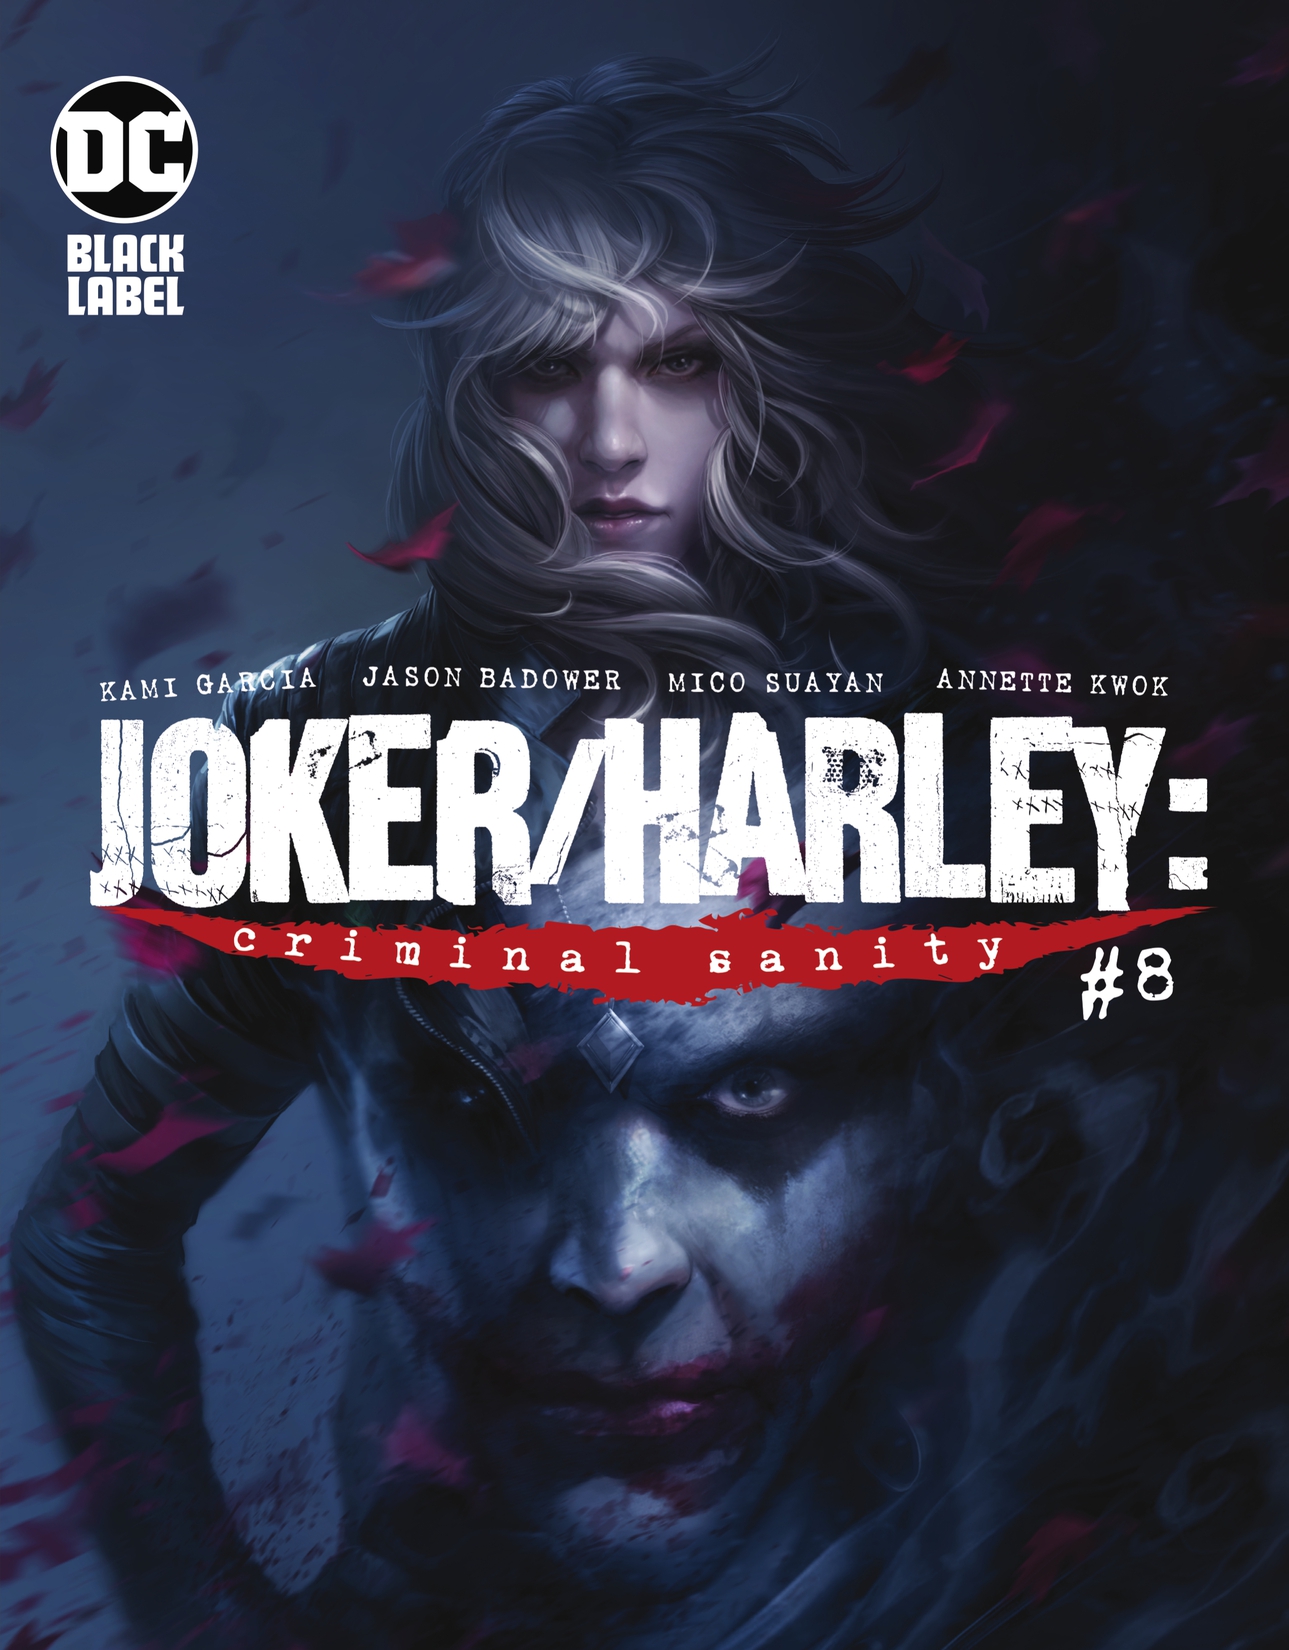 Joker/Harley: Criminal Sanity #8 preview images